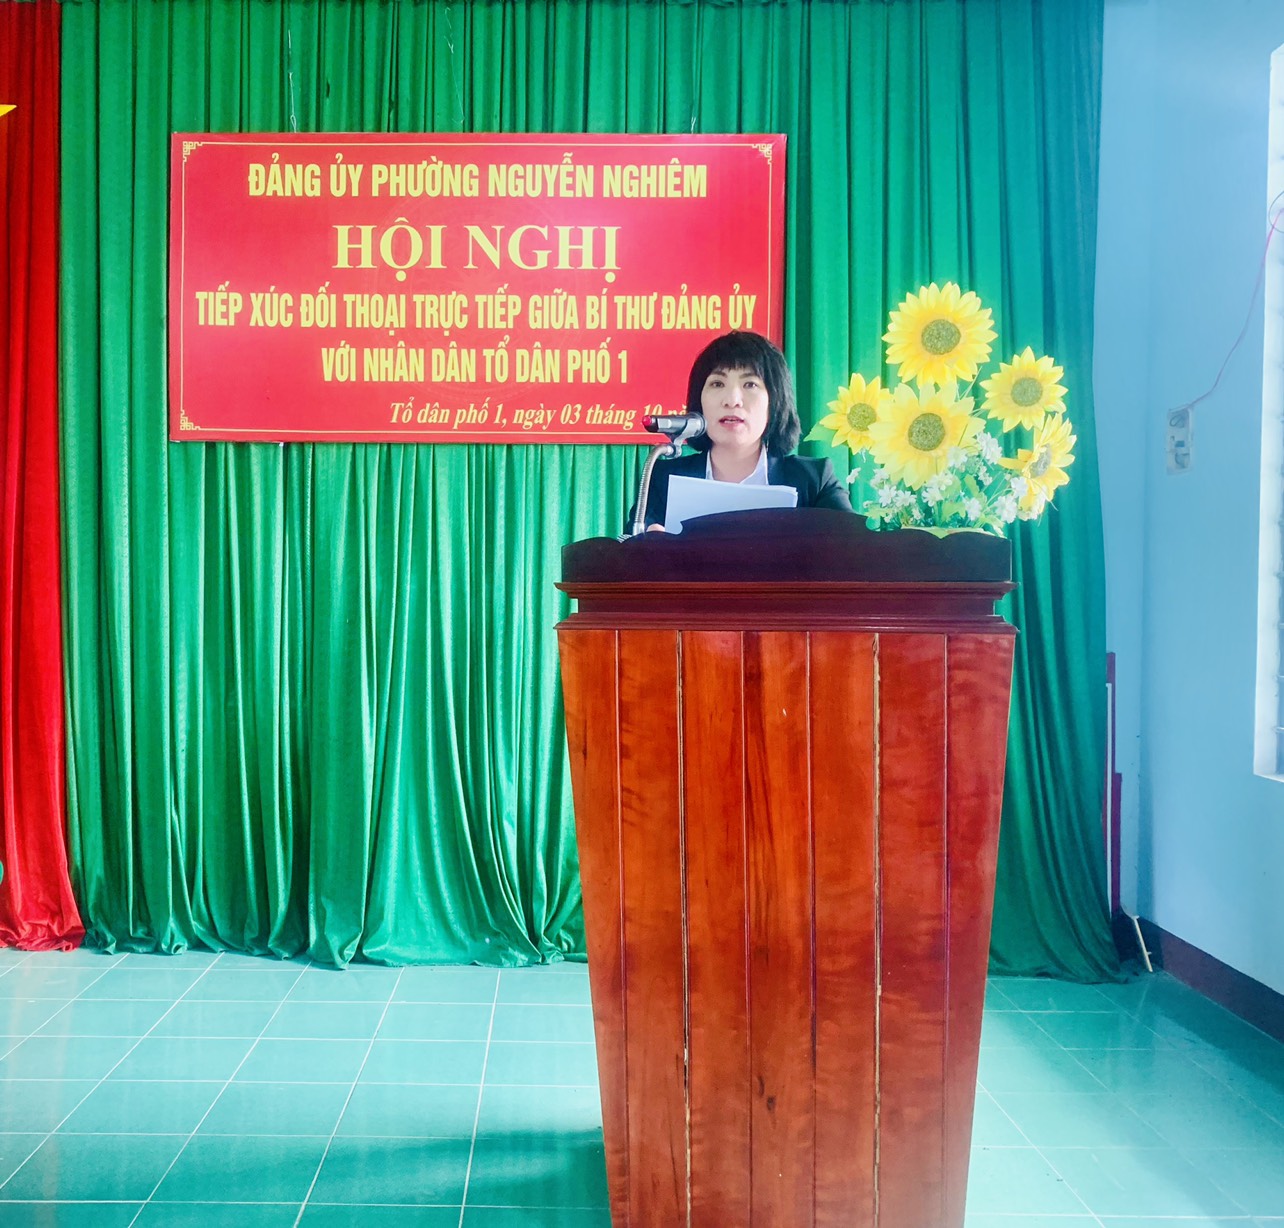 Bí thư Đảng ủy Phường Nguyễn Nghiêm đối thoại trực tiếp với Nhân dân TDP1